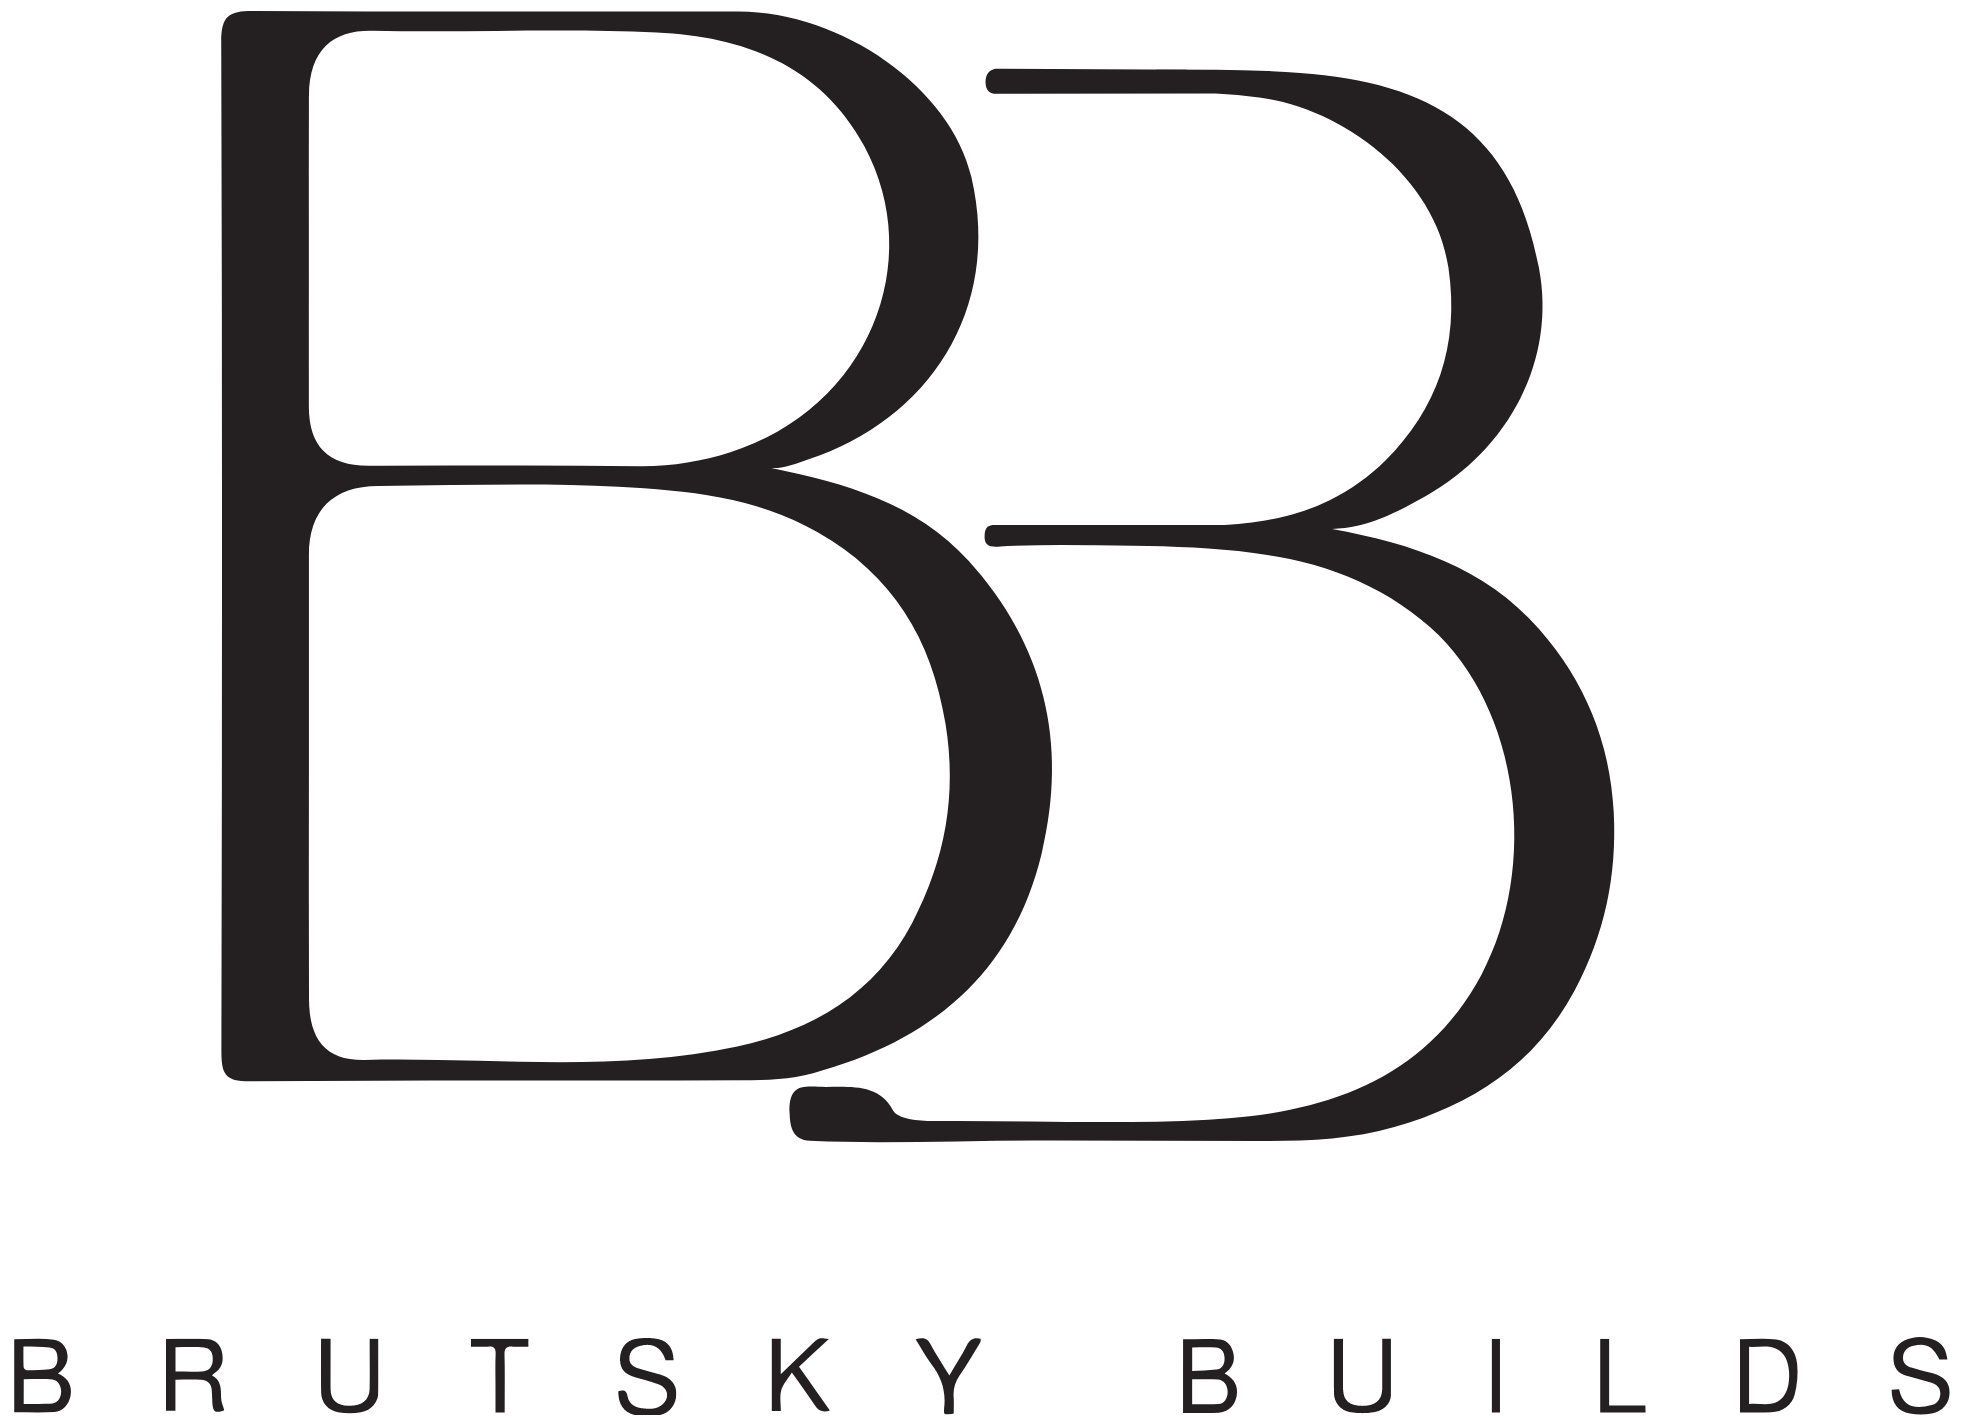 Brutsky Builds - Kitchen and Bath Remodeler Logo